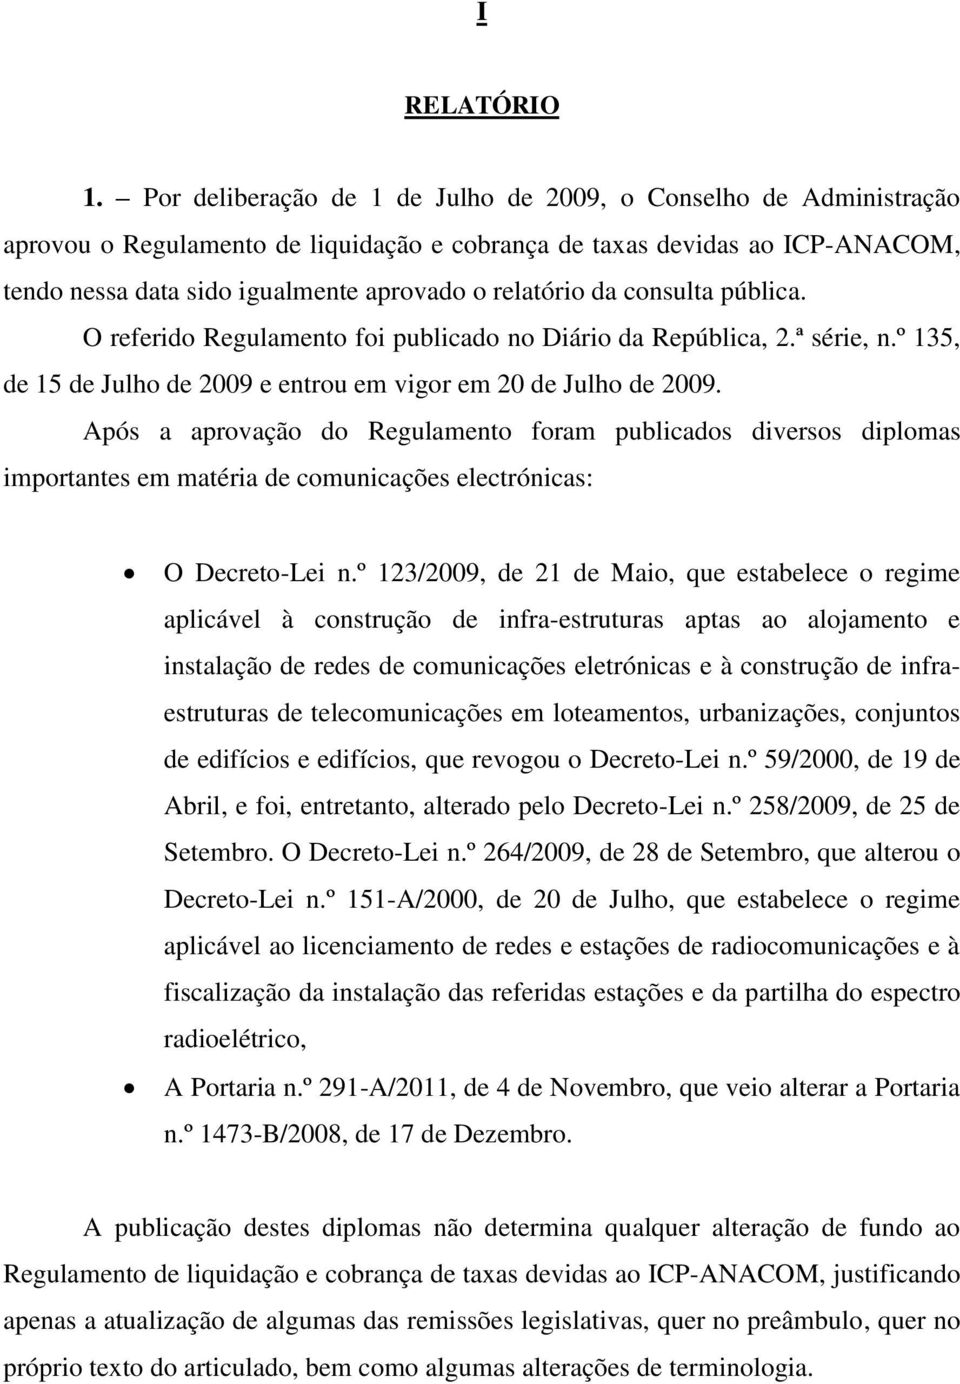 da consulta pública. O referido Regulamento foi publicado no Diário da República, 2.ª série, n.º 135, de 15 de Julho de 2009 e entrou em vigor em 20 de Julho de 2009.